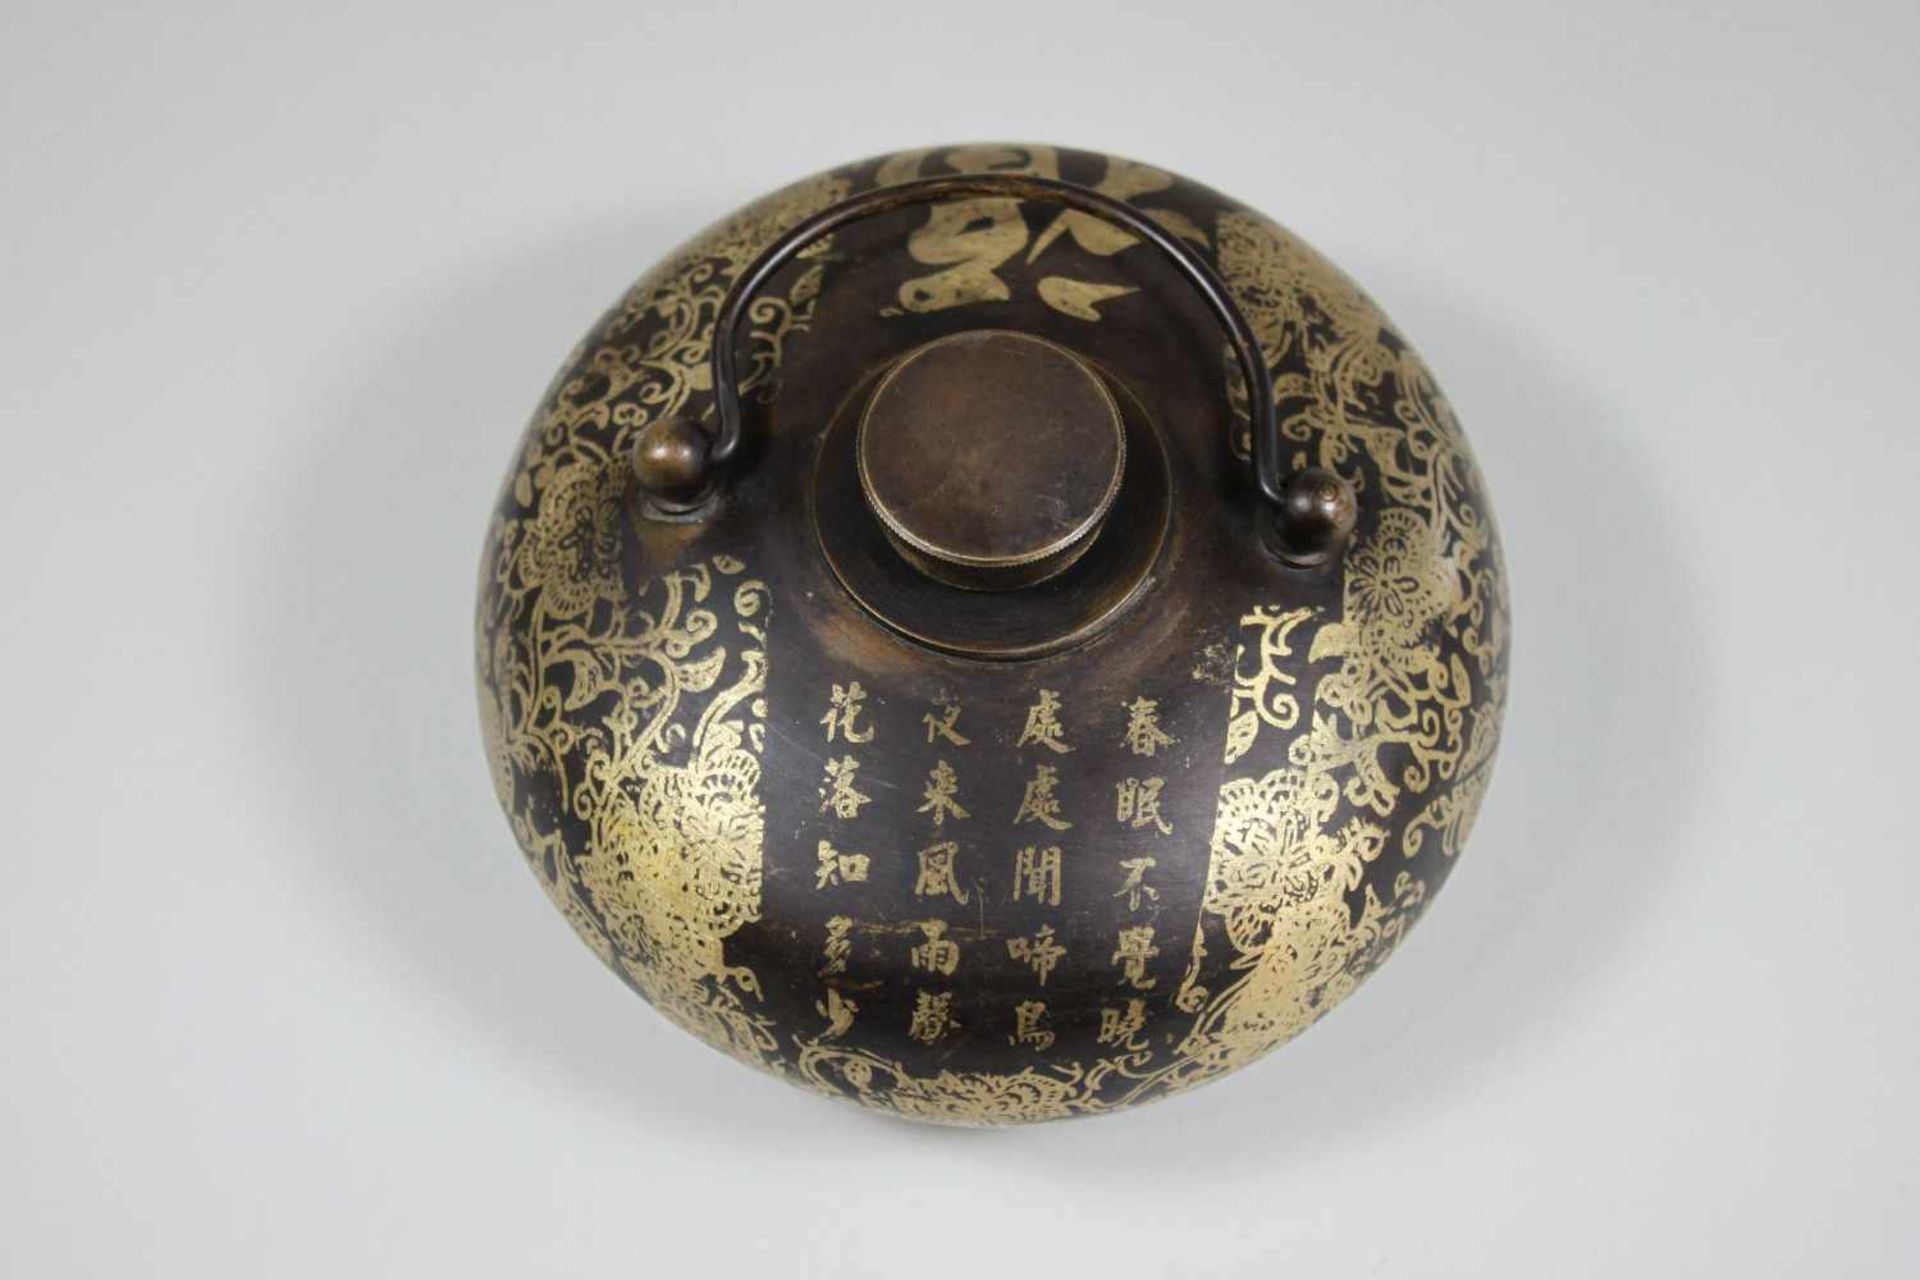 Kleiner Bettwärmer, Japan, Messing, florales Dekor, jap. Inschrift auf dem oberen Teil. H.: 8 cm, - Bild 2 aus 3